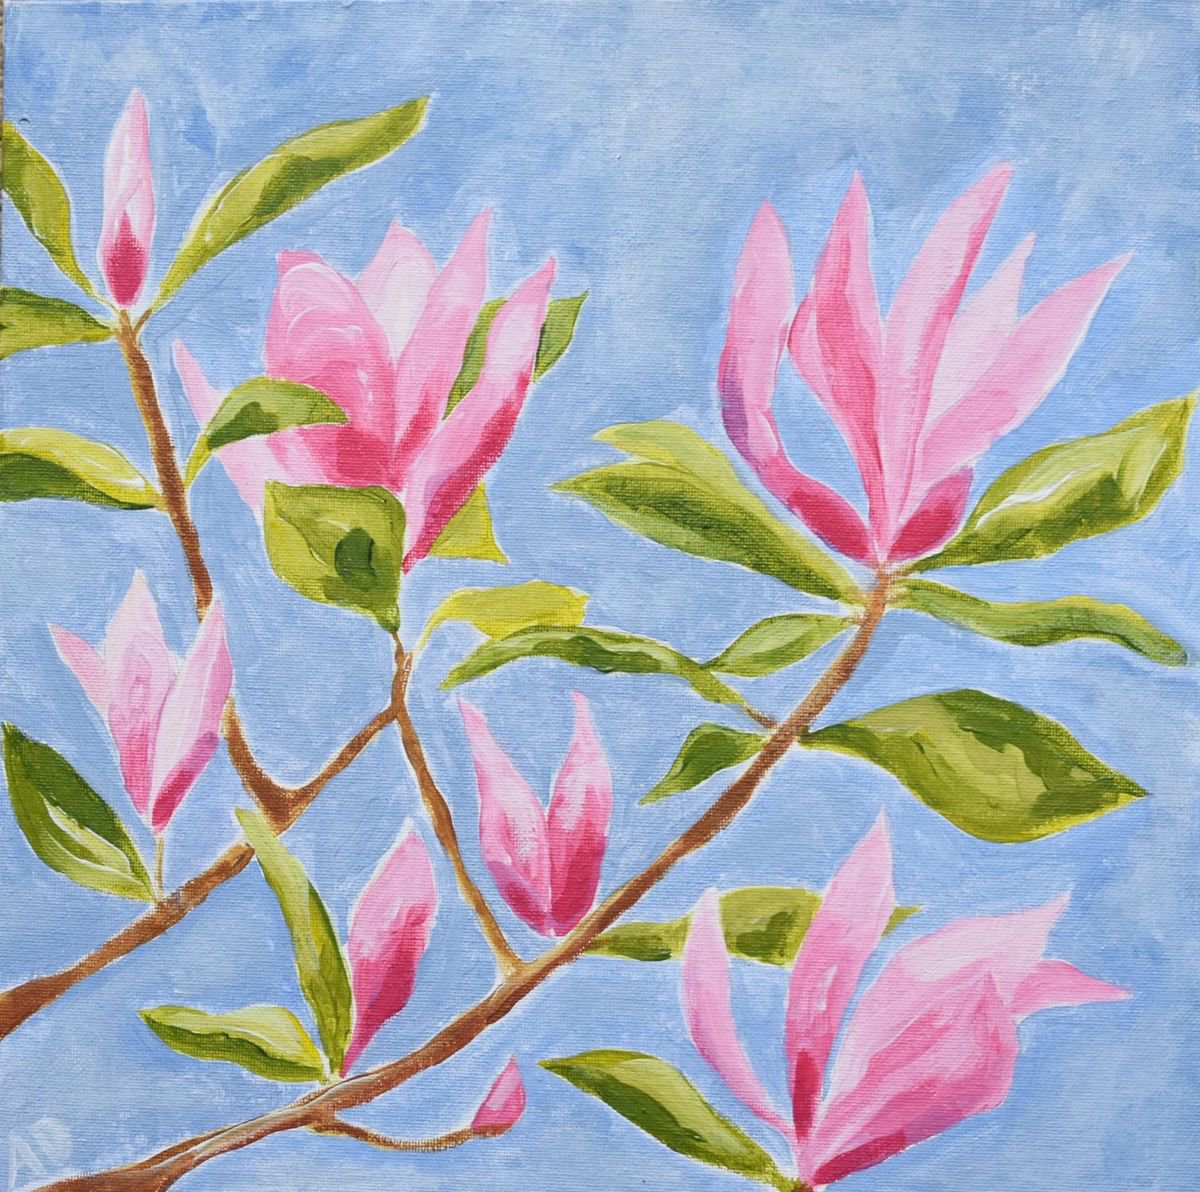 Magnolia buds by Alison Deegan